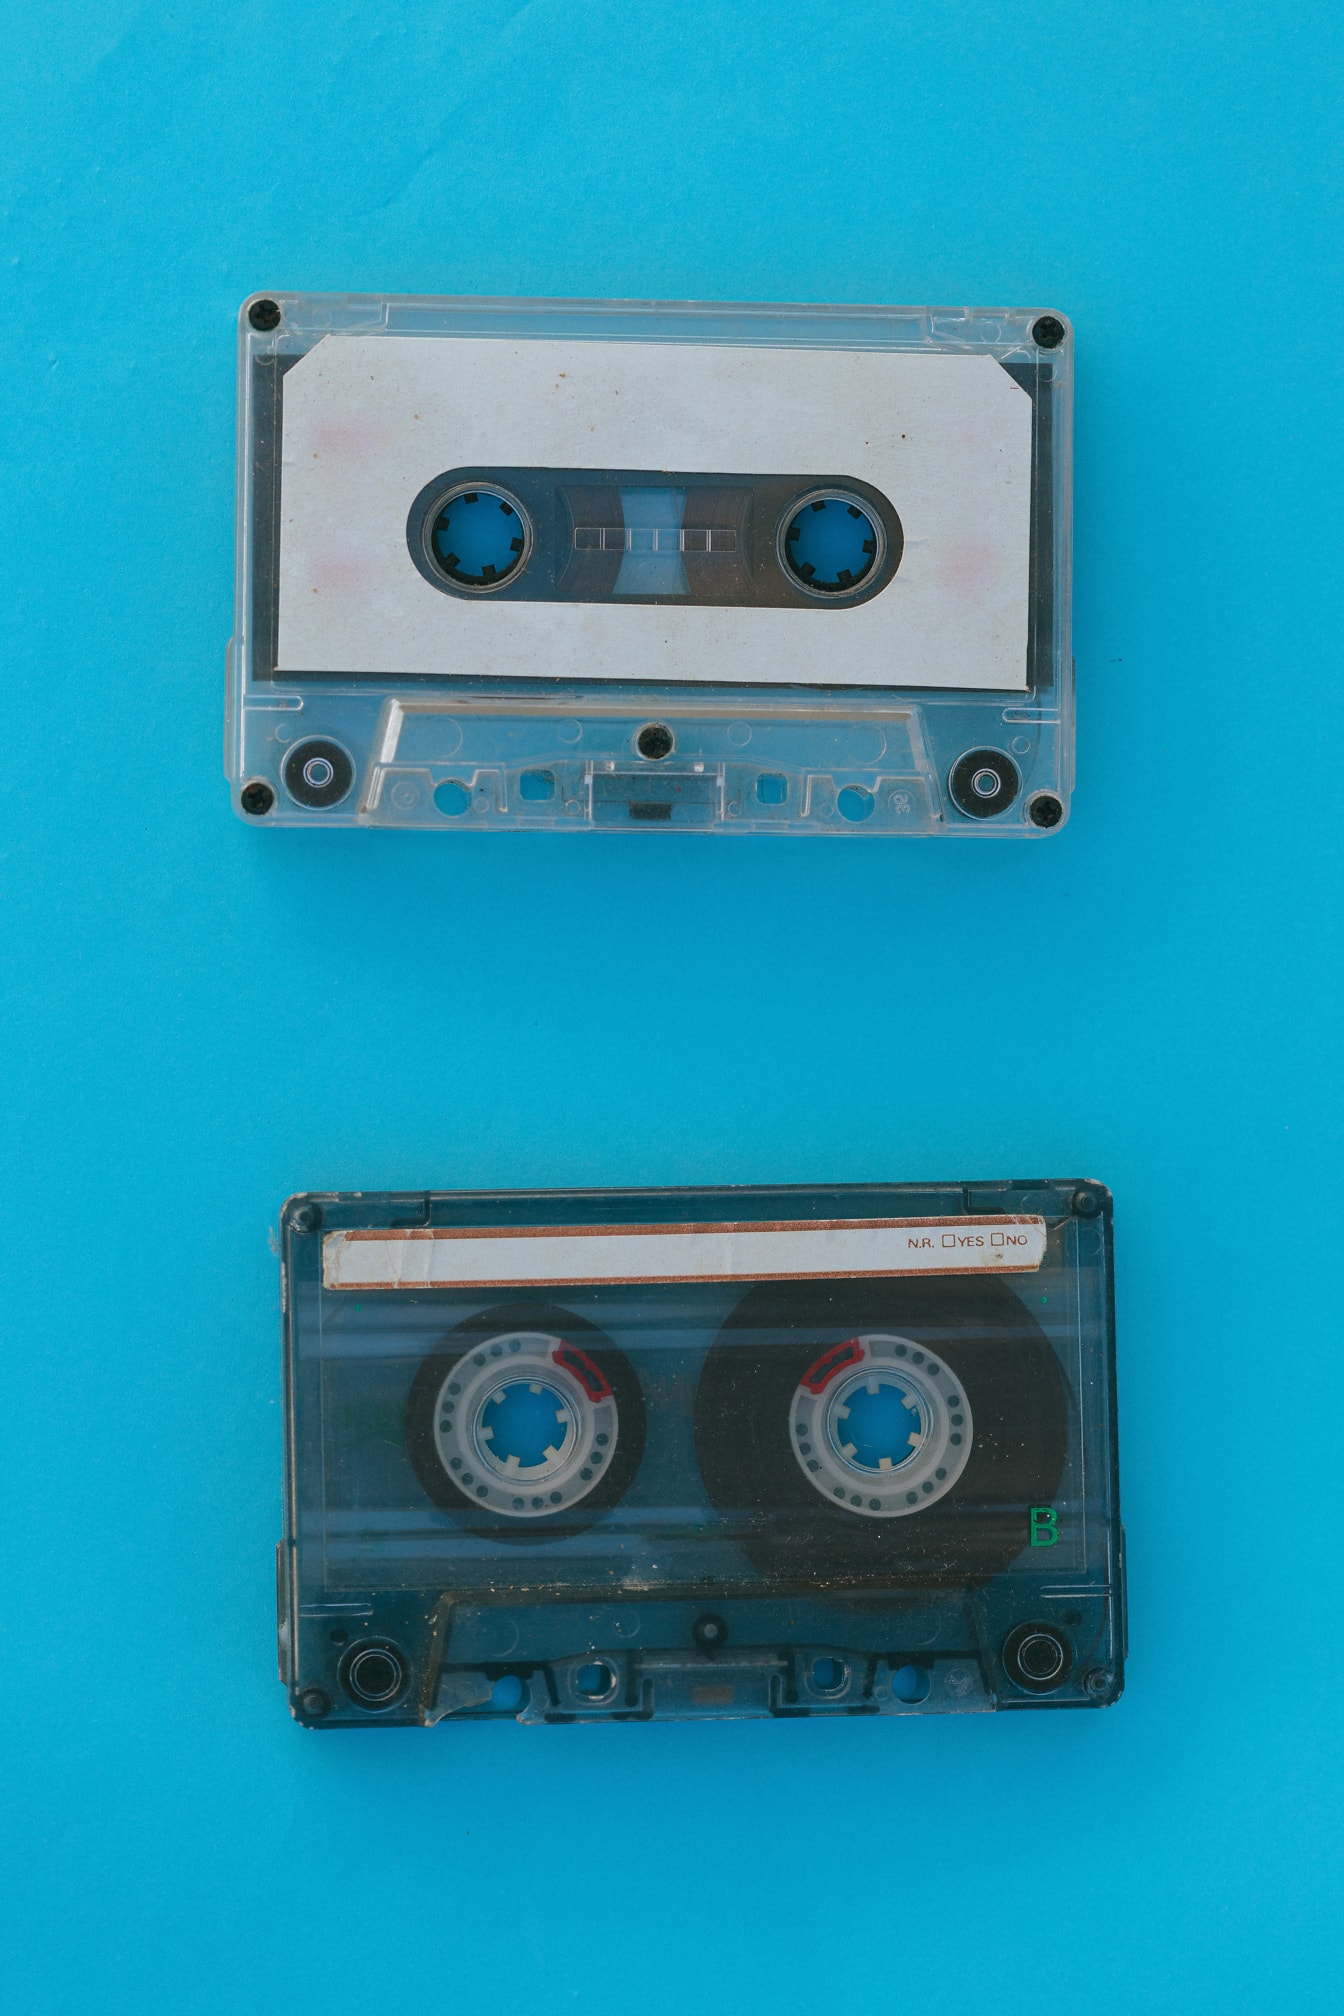 Băng cassette âm thanh cũ trên nền màu xanh